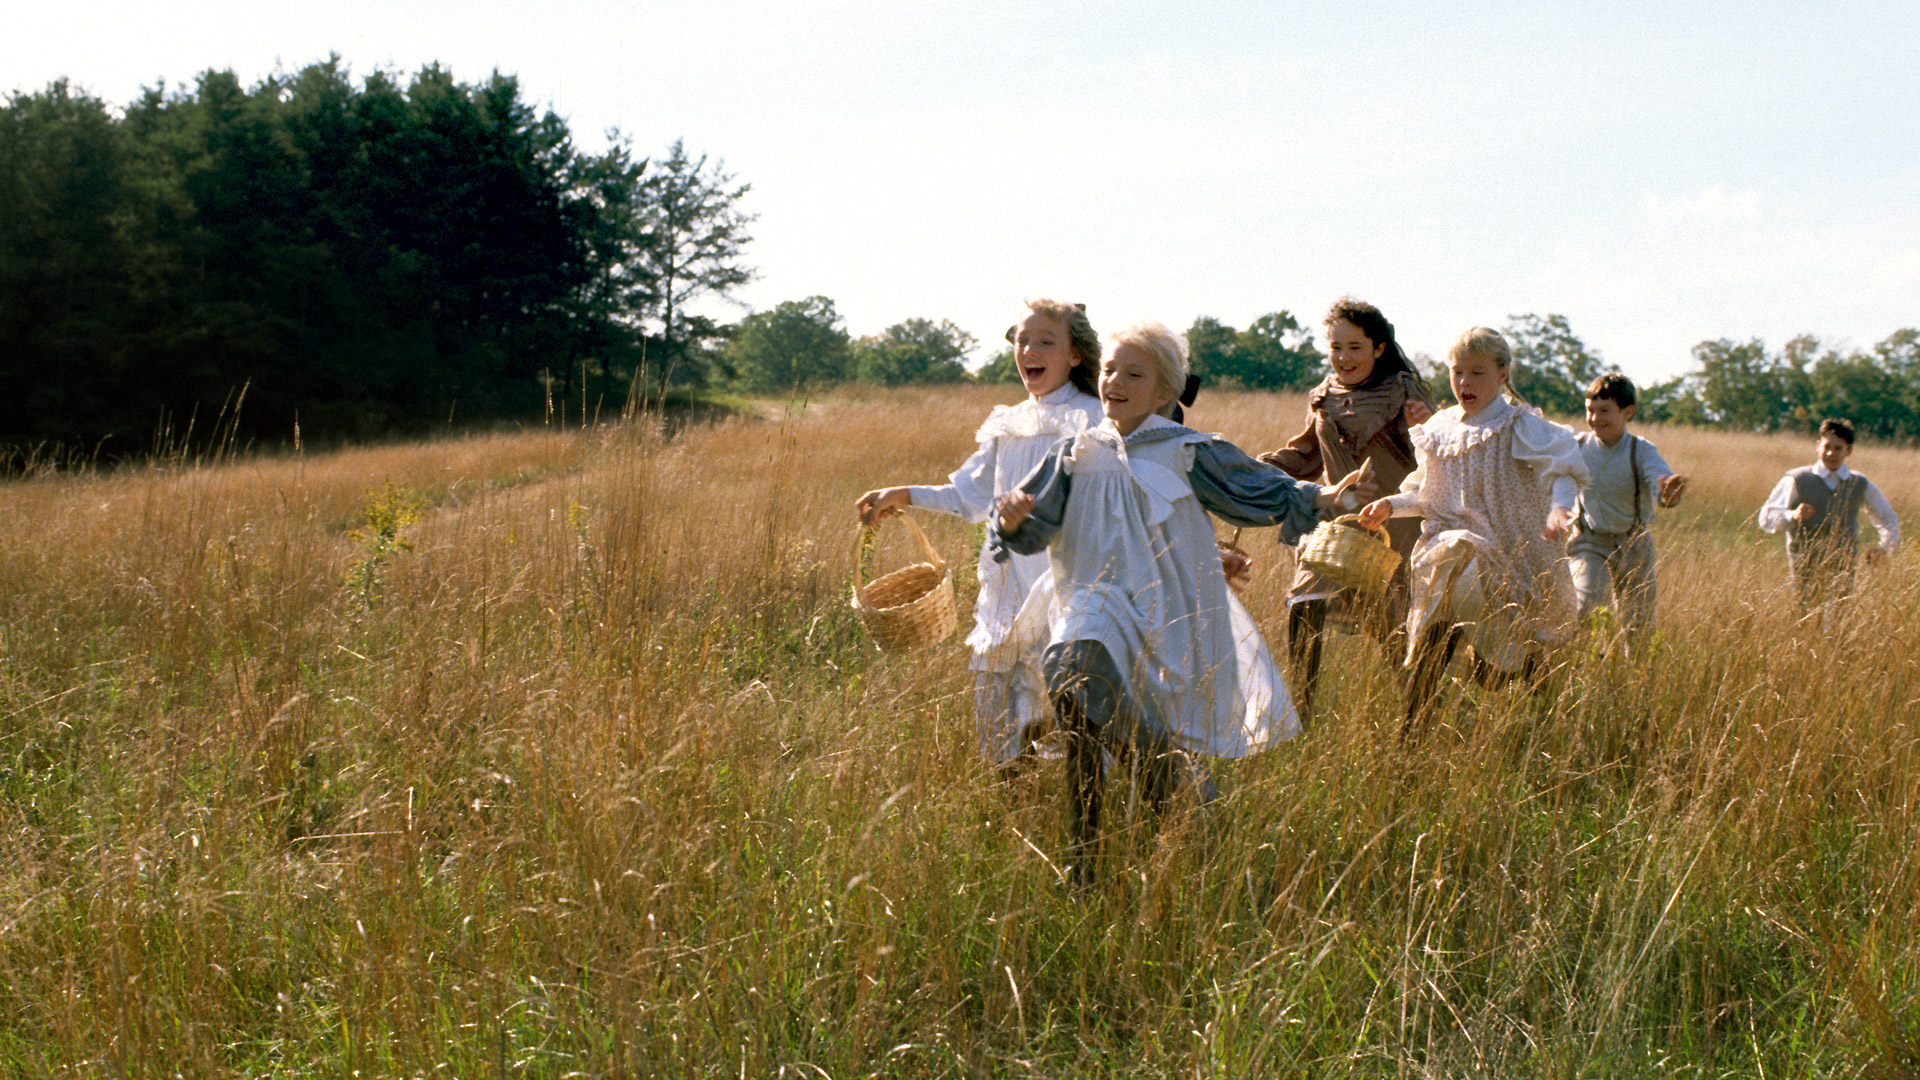 Jelenet a Váratlan utazásból, gyerekek futnak a mezőn.